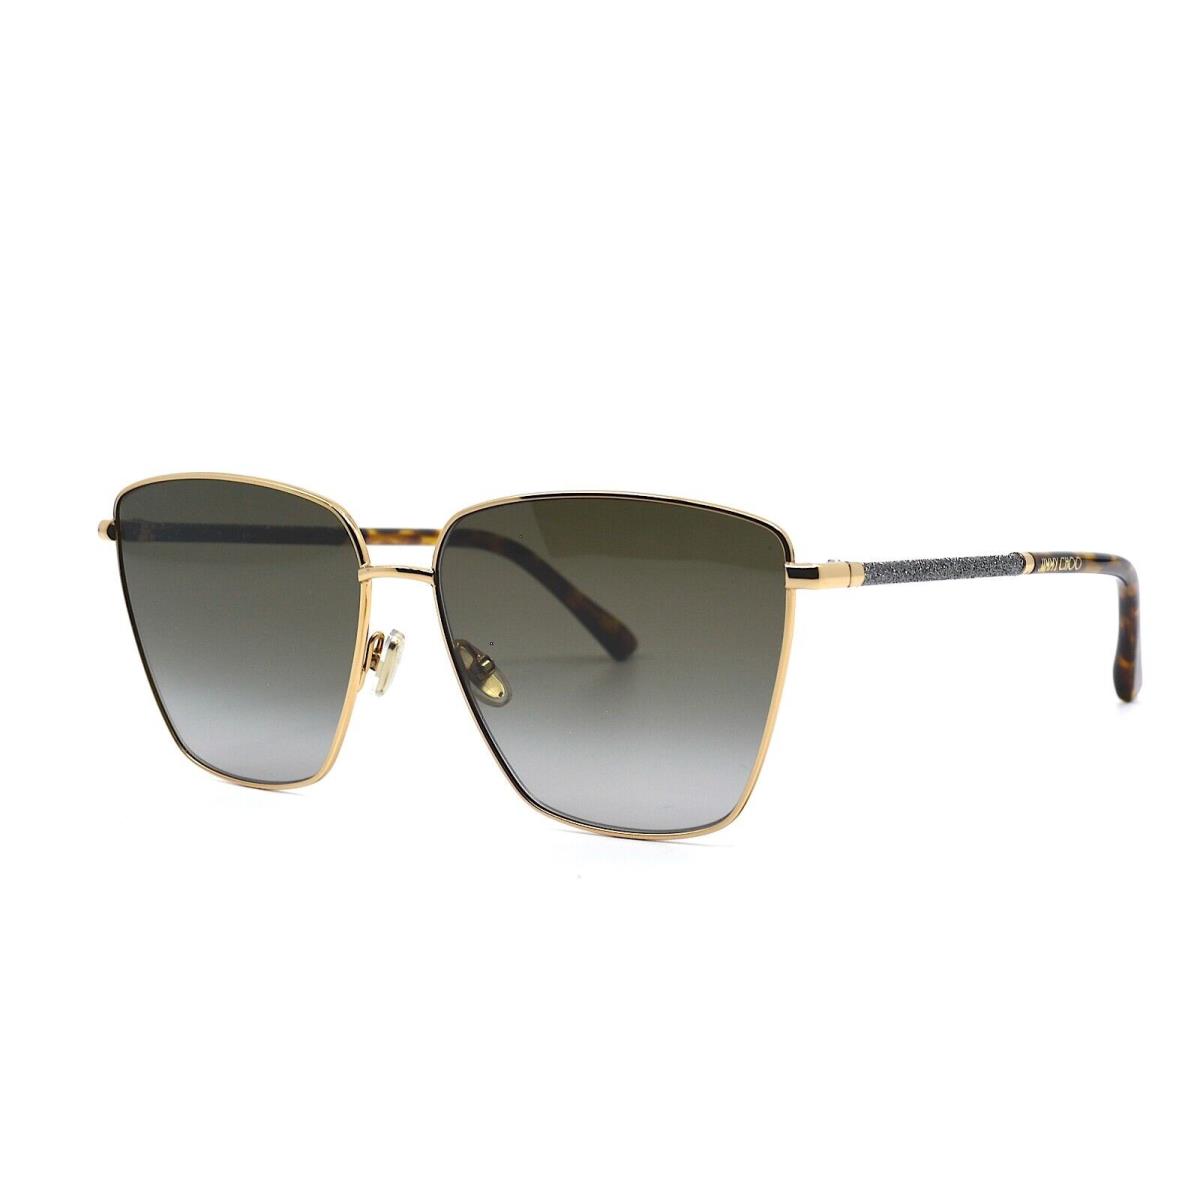 Jimmy Choo Lavi/s 06J Gold Grey Gradient Women`s Sunglasses - Frame: Gold, Lens: Gray